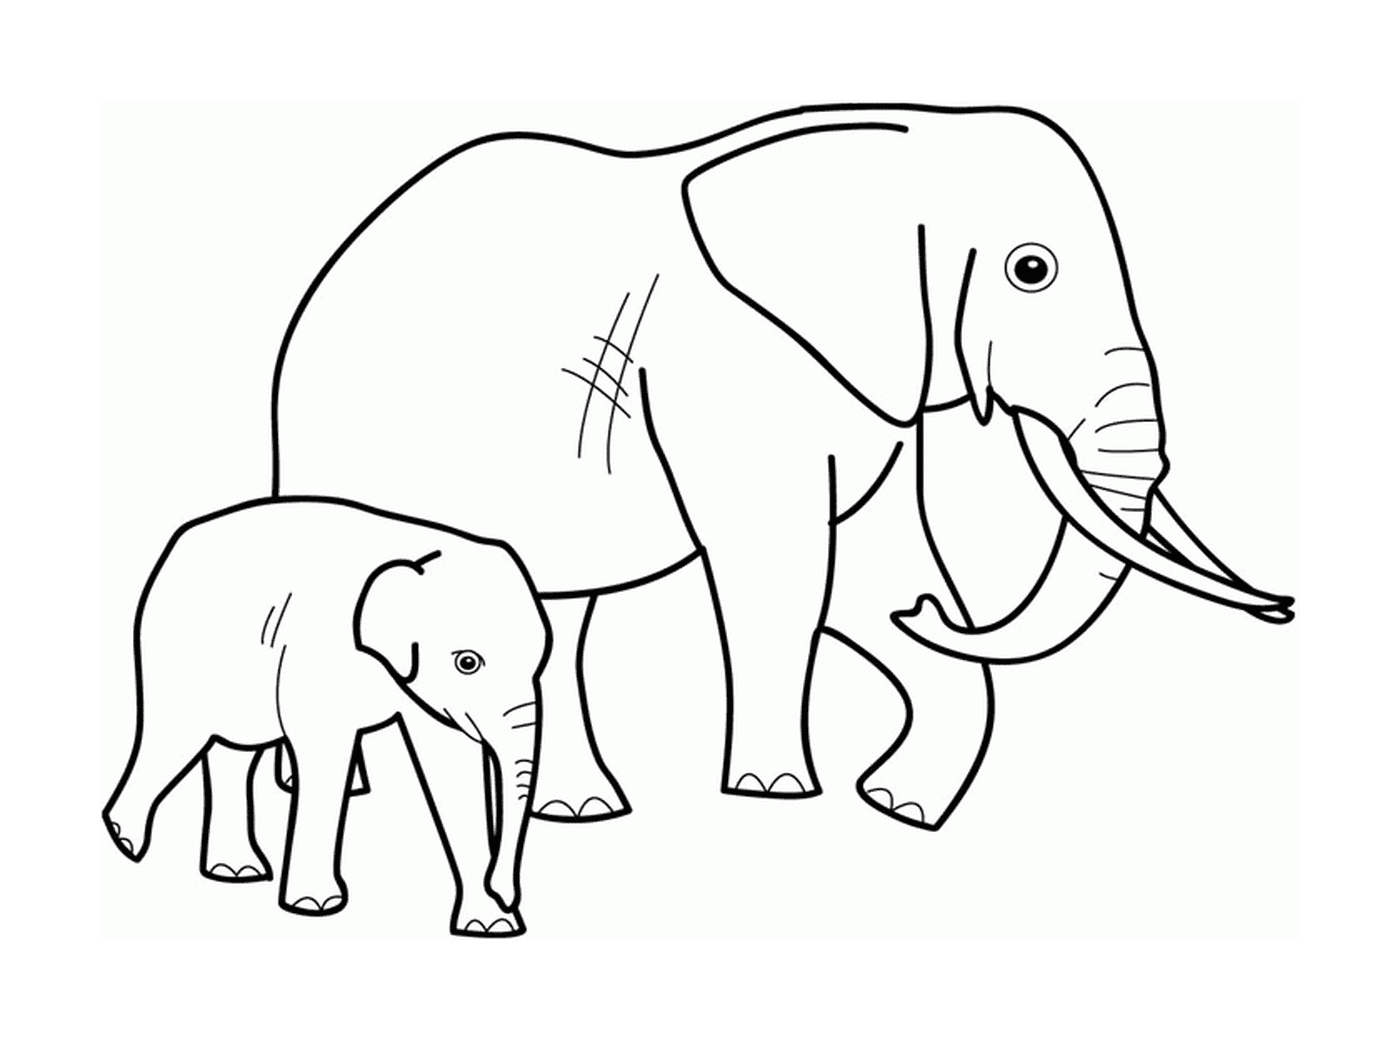  Ein erwachsener Elefant und ein Elefant nebeneinander 